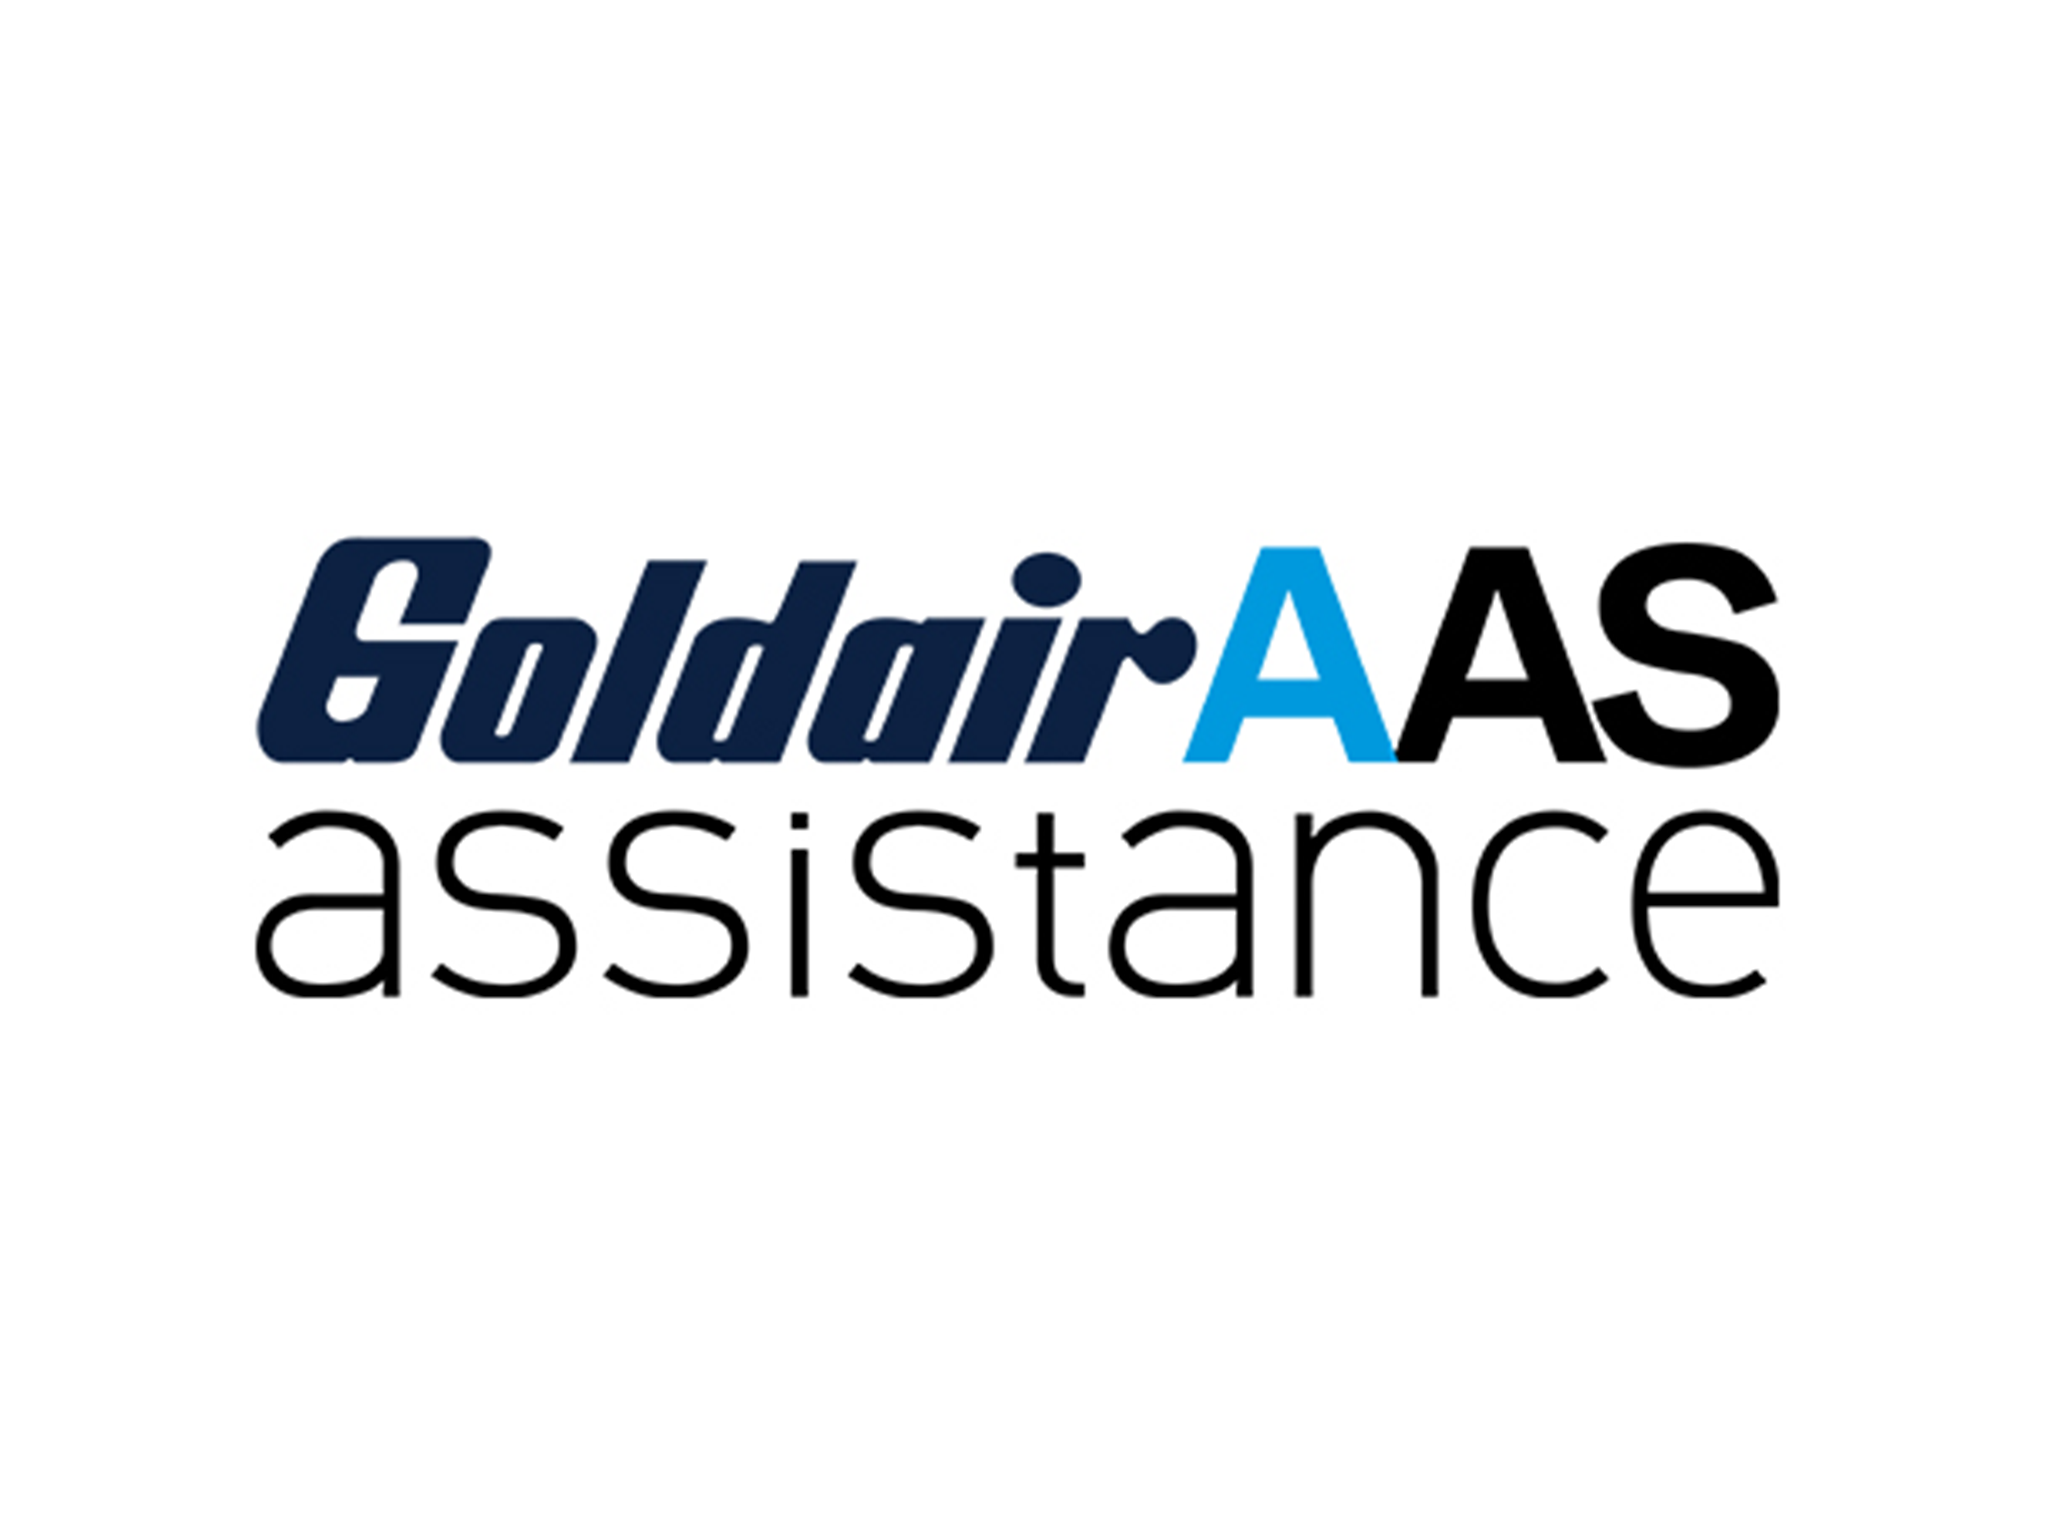 Logo Goldaris AAS assistance